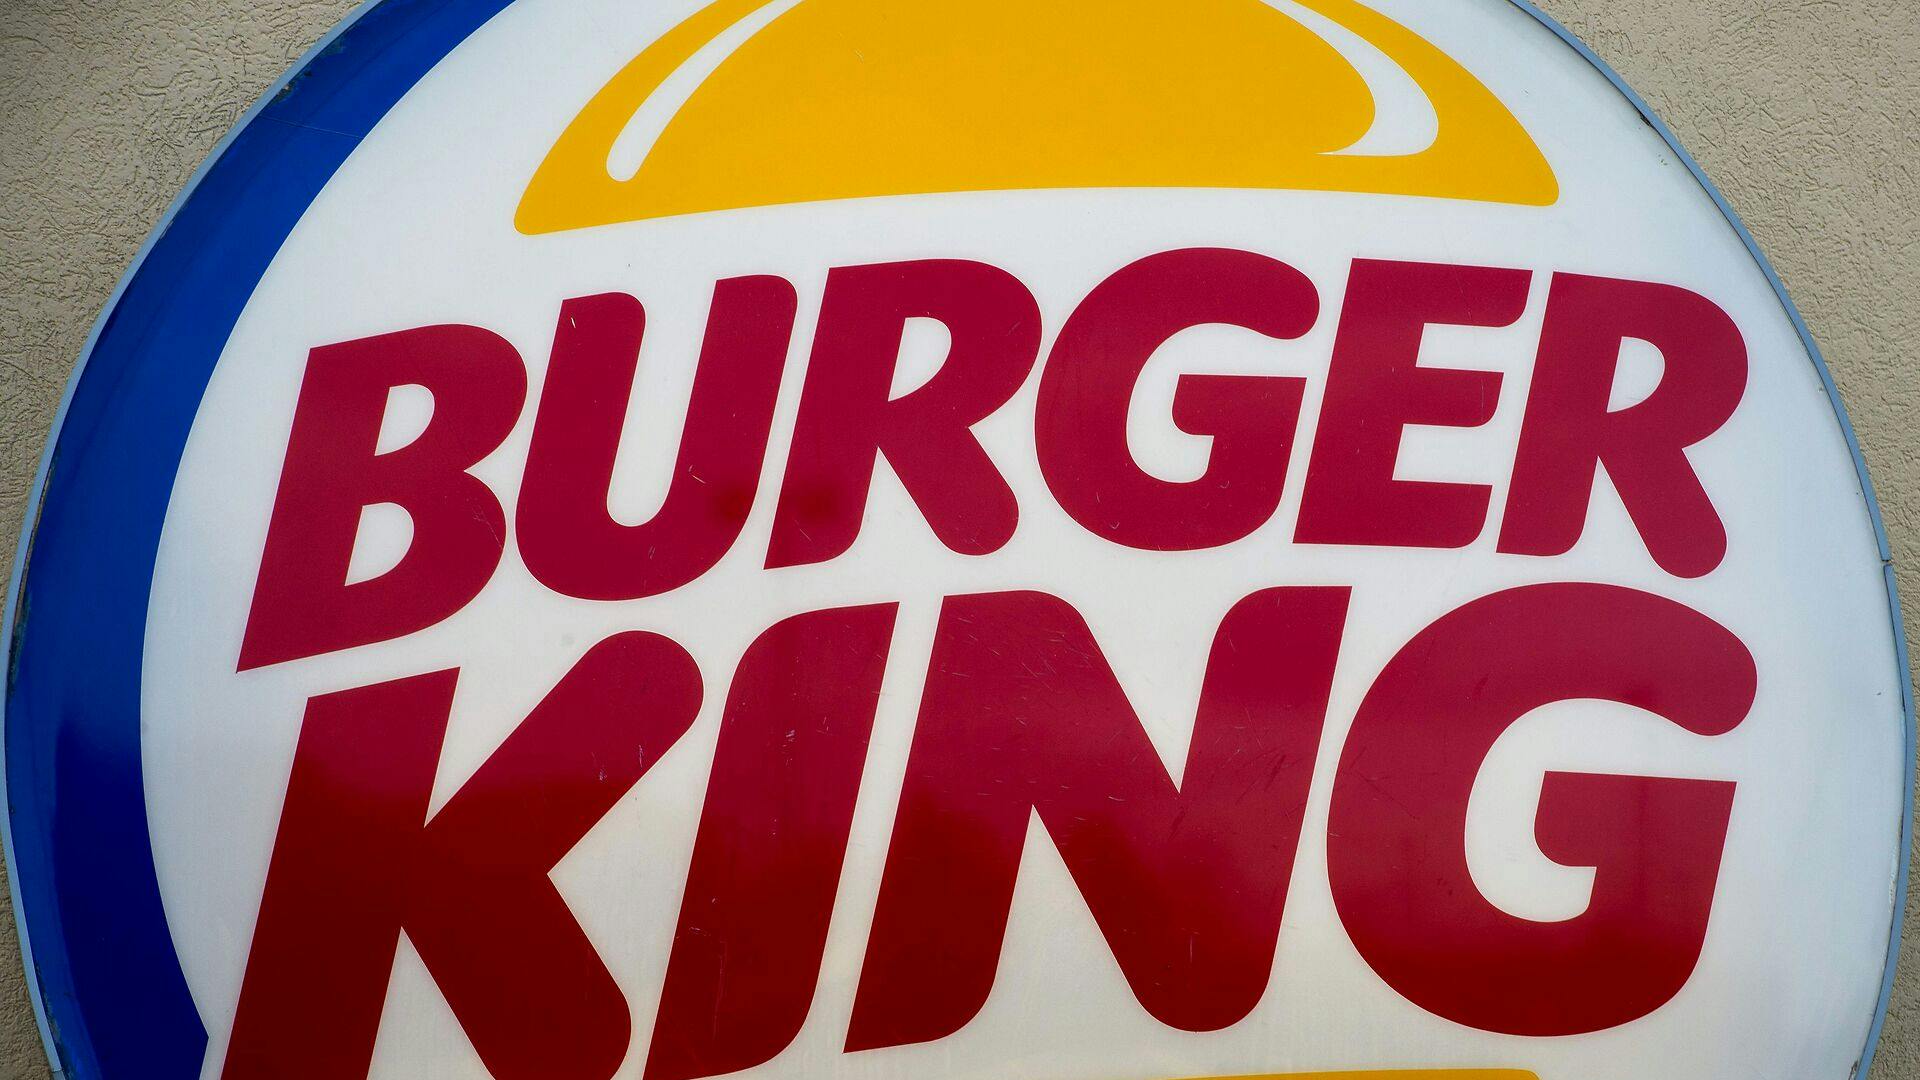 Burger King er den femtestørste fastfoodkæde baseret på indkomst. Kæden bliver udkonkurreret af McDonalds, Subway, Starbucks og KFC. 